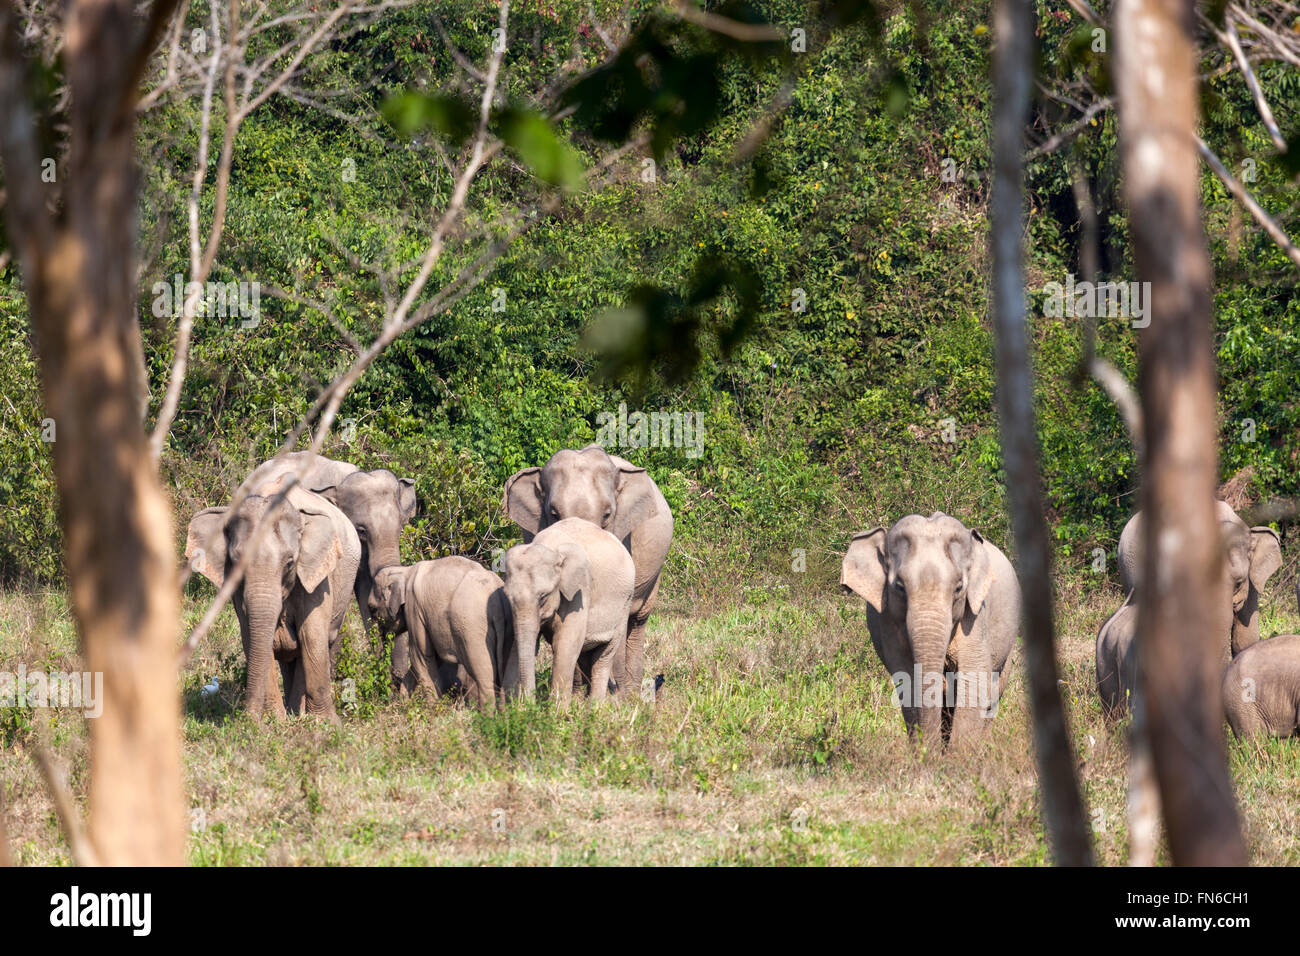 Un troupeau d'éléphants indiens sauvages (Elephas maximus indicus) dans le Parc National de Kui Buri - Prachuap Khiri Khan - Province de la Thaïlande. Banque D'Images